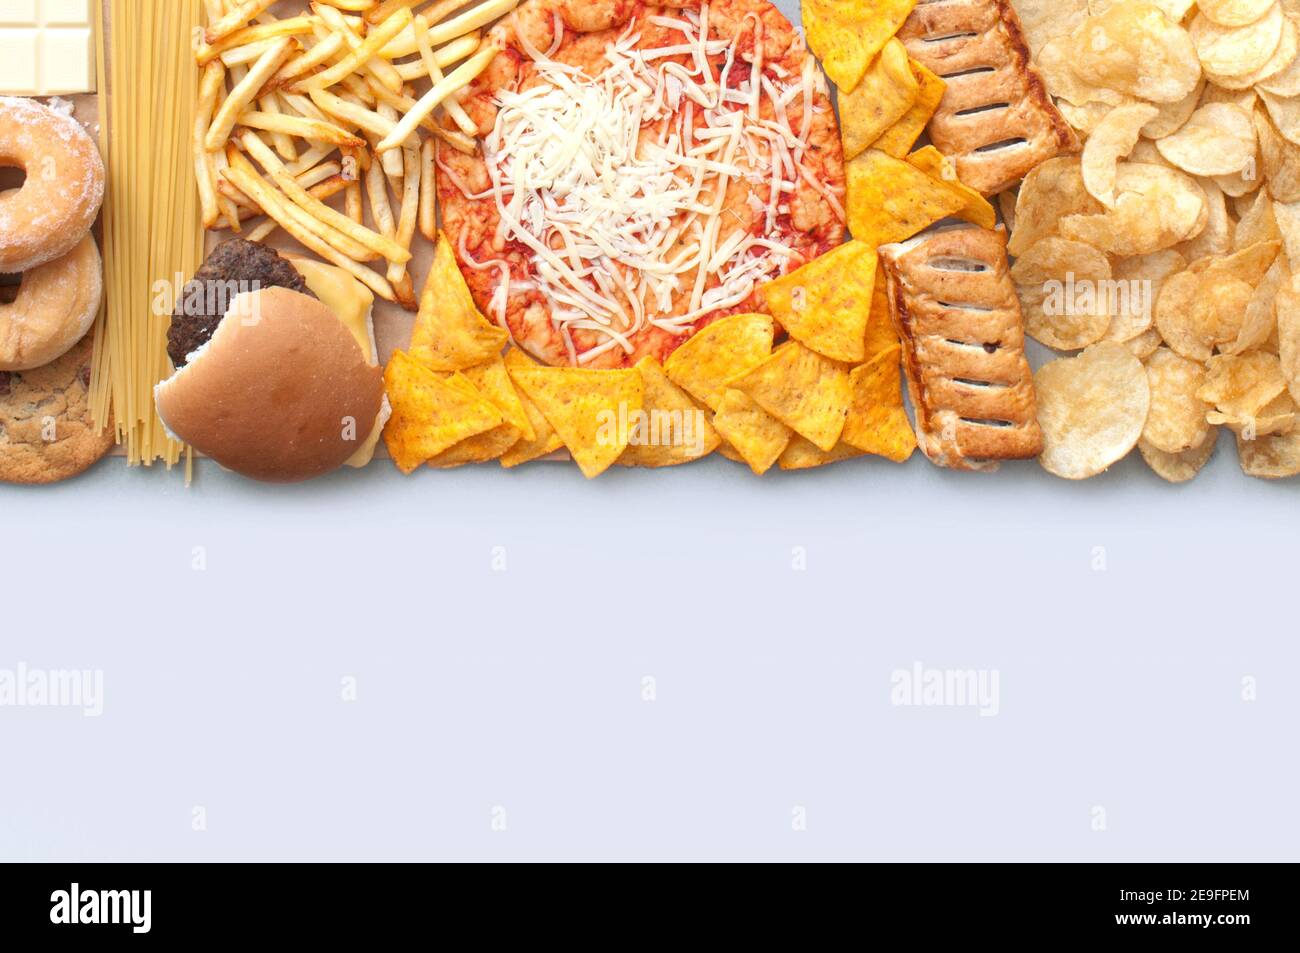 La collection de fast-food comprend des frites, des pizzas, des hamburgers et des chips de tortilla avec espace de copie Banque D'Images